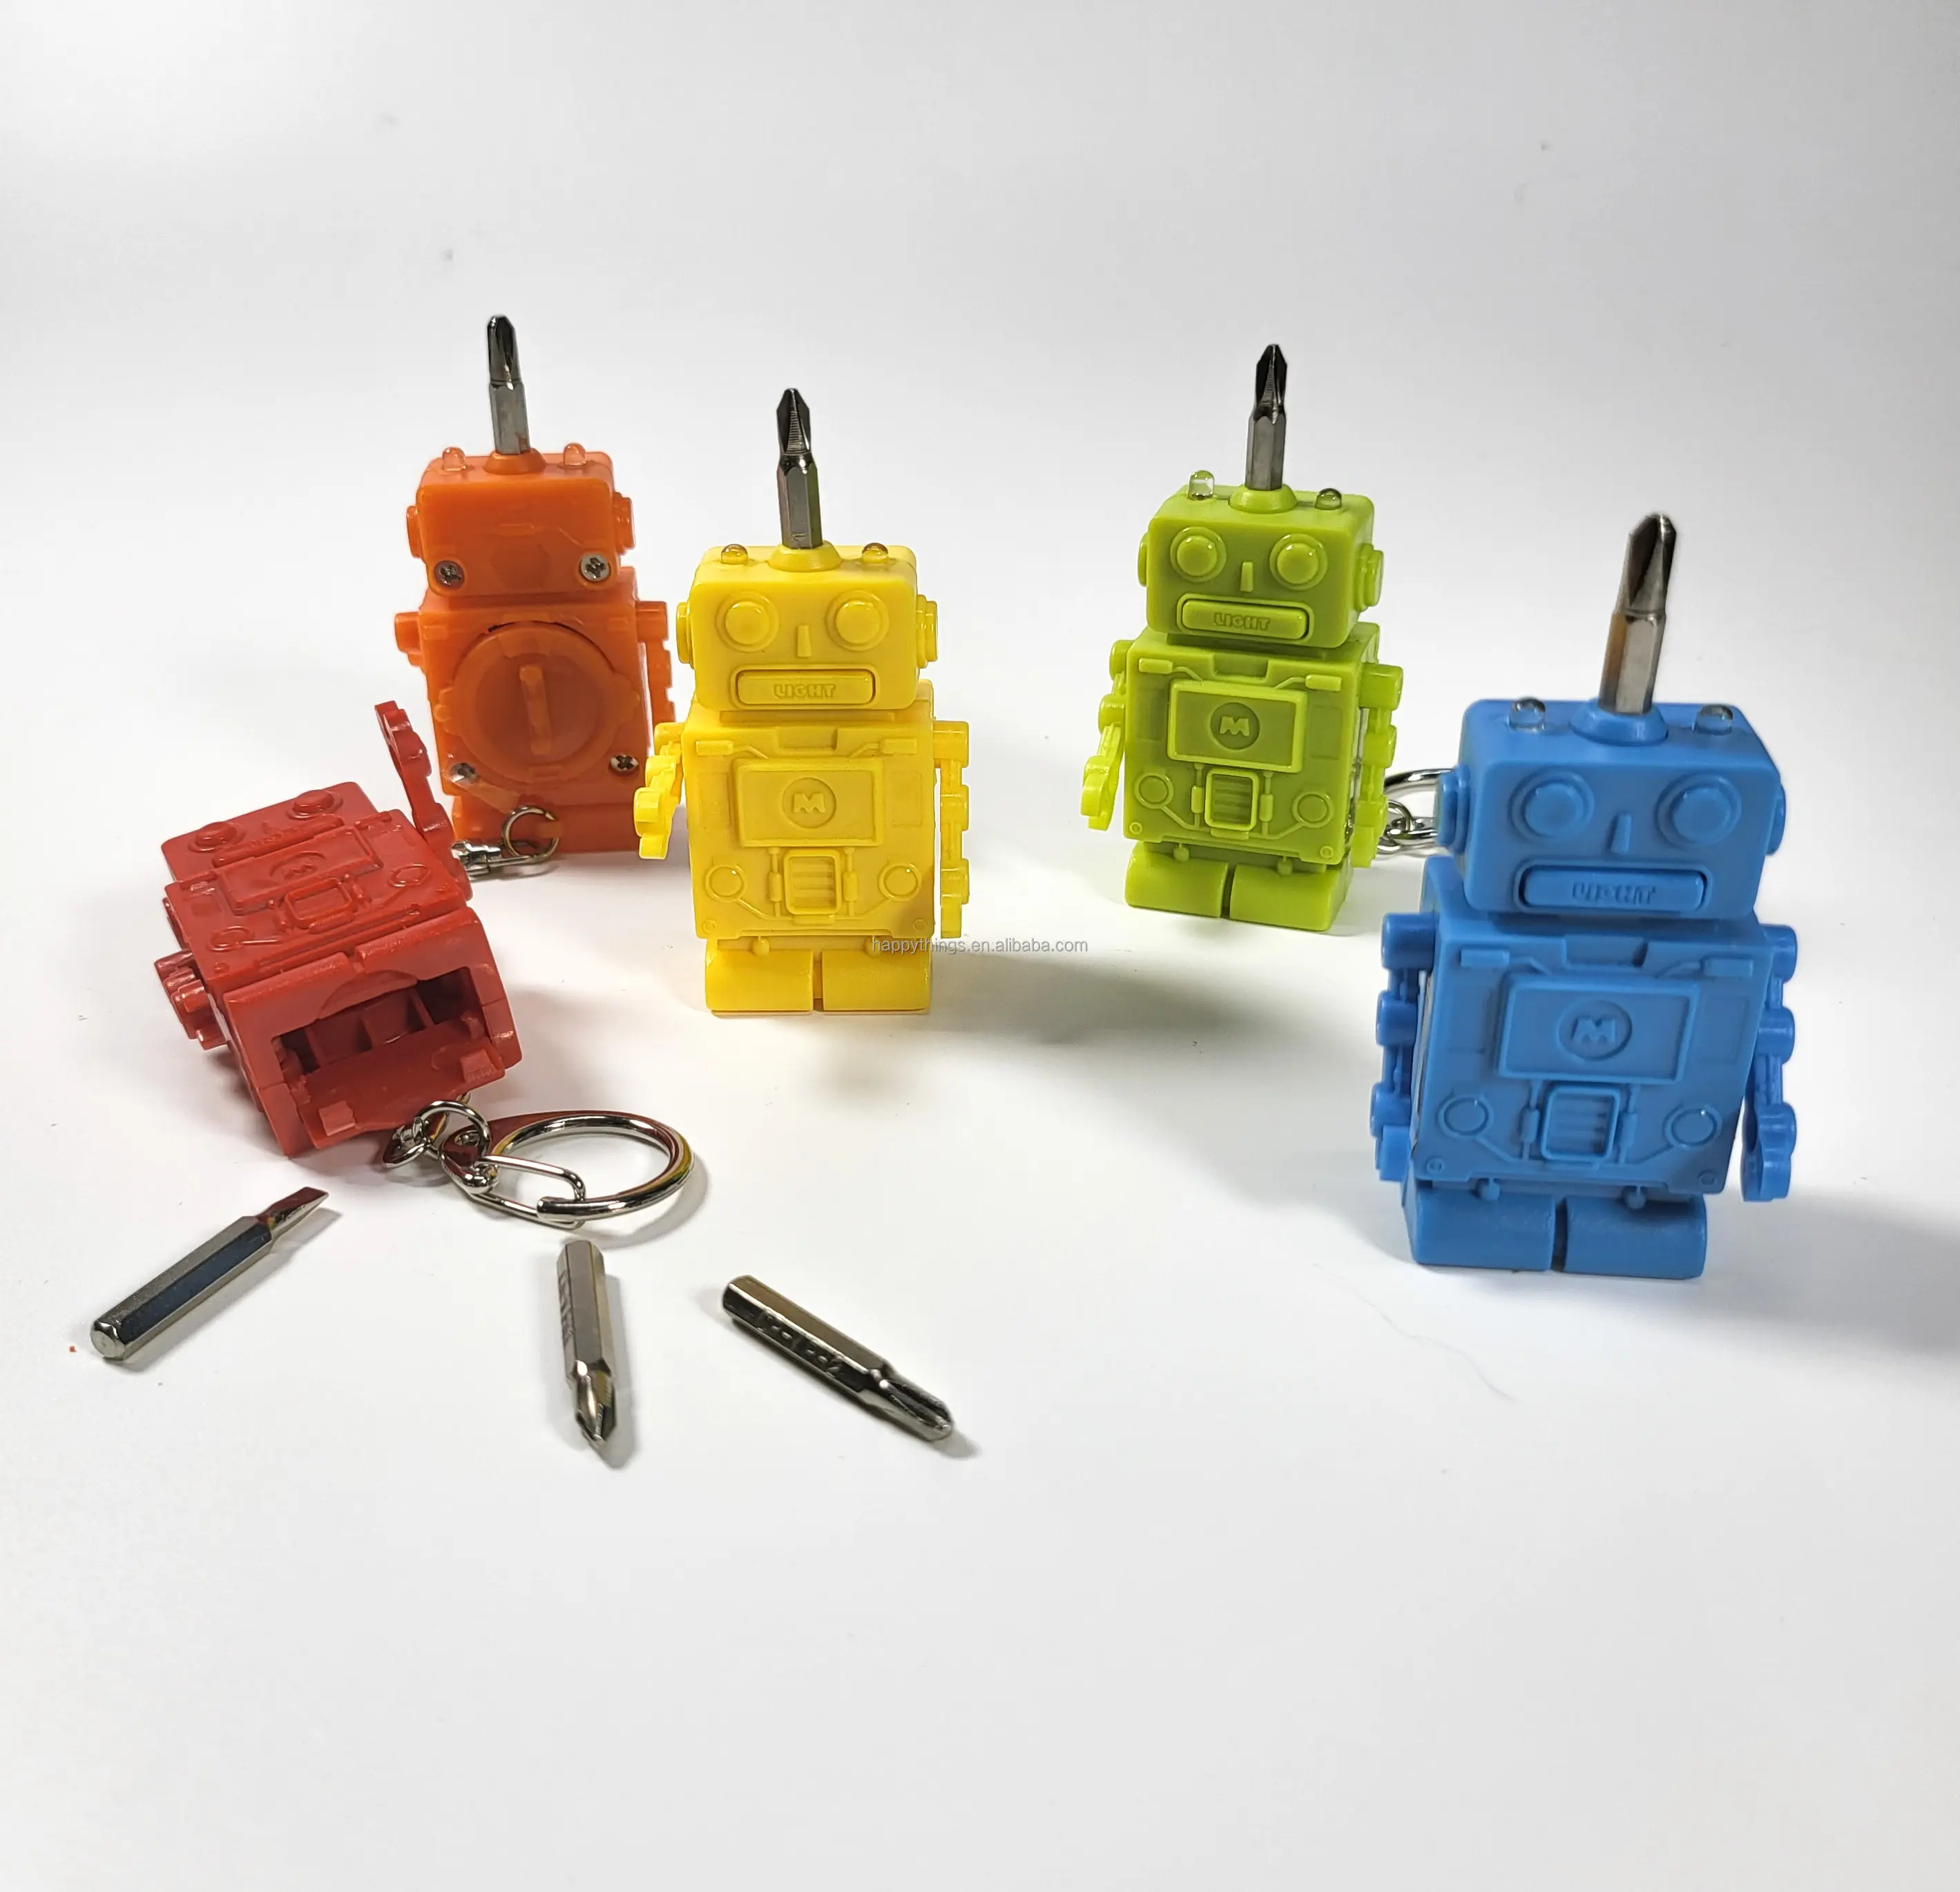 مجموعة أدوات متعددة مع سلسلة مفاتيح بلاستيكية صغيرة الحجم تعمل كهدايا تذكارية بسعر منخفض لكمية الطلب وتخفيضات كبيرة